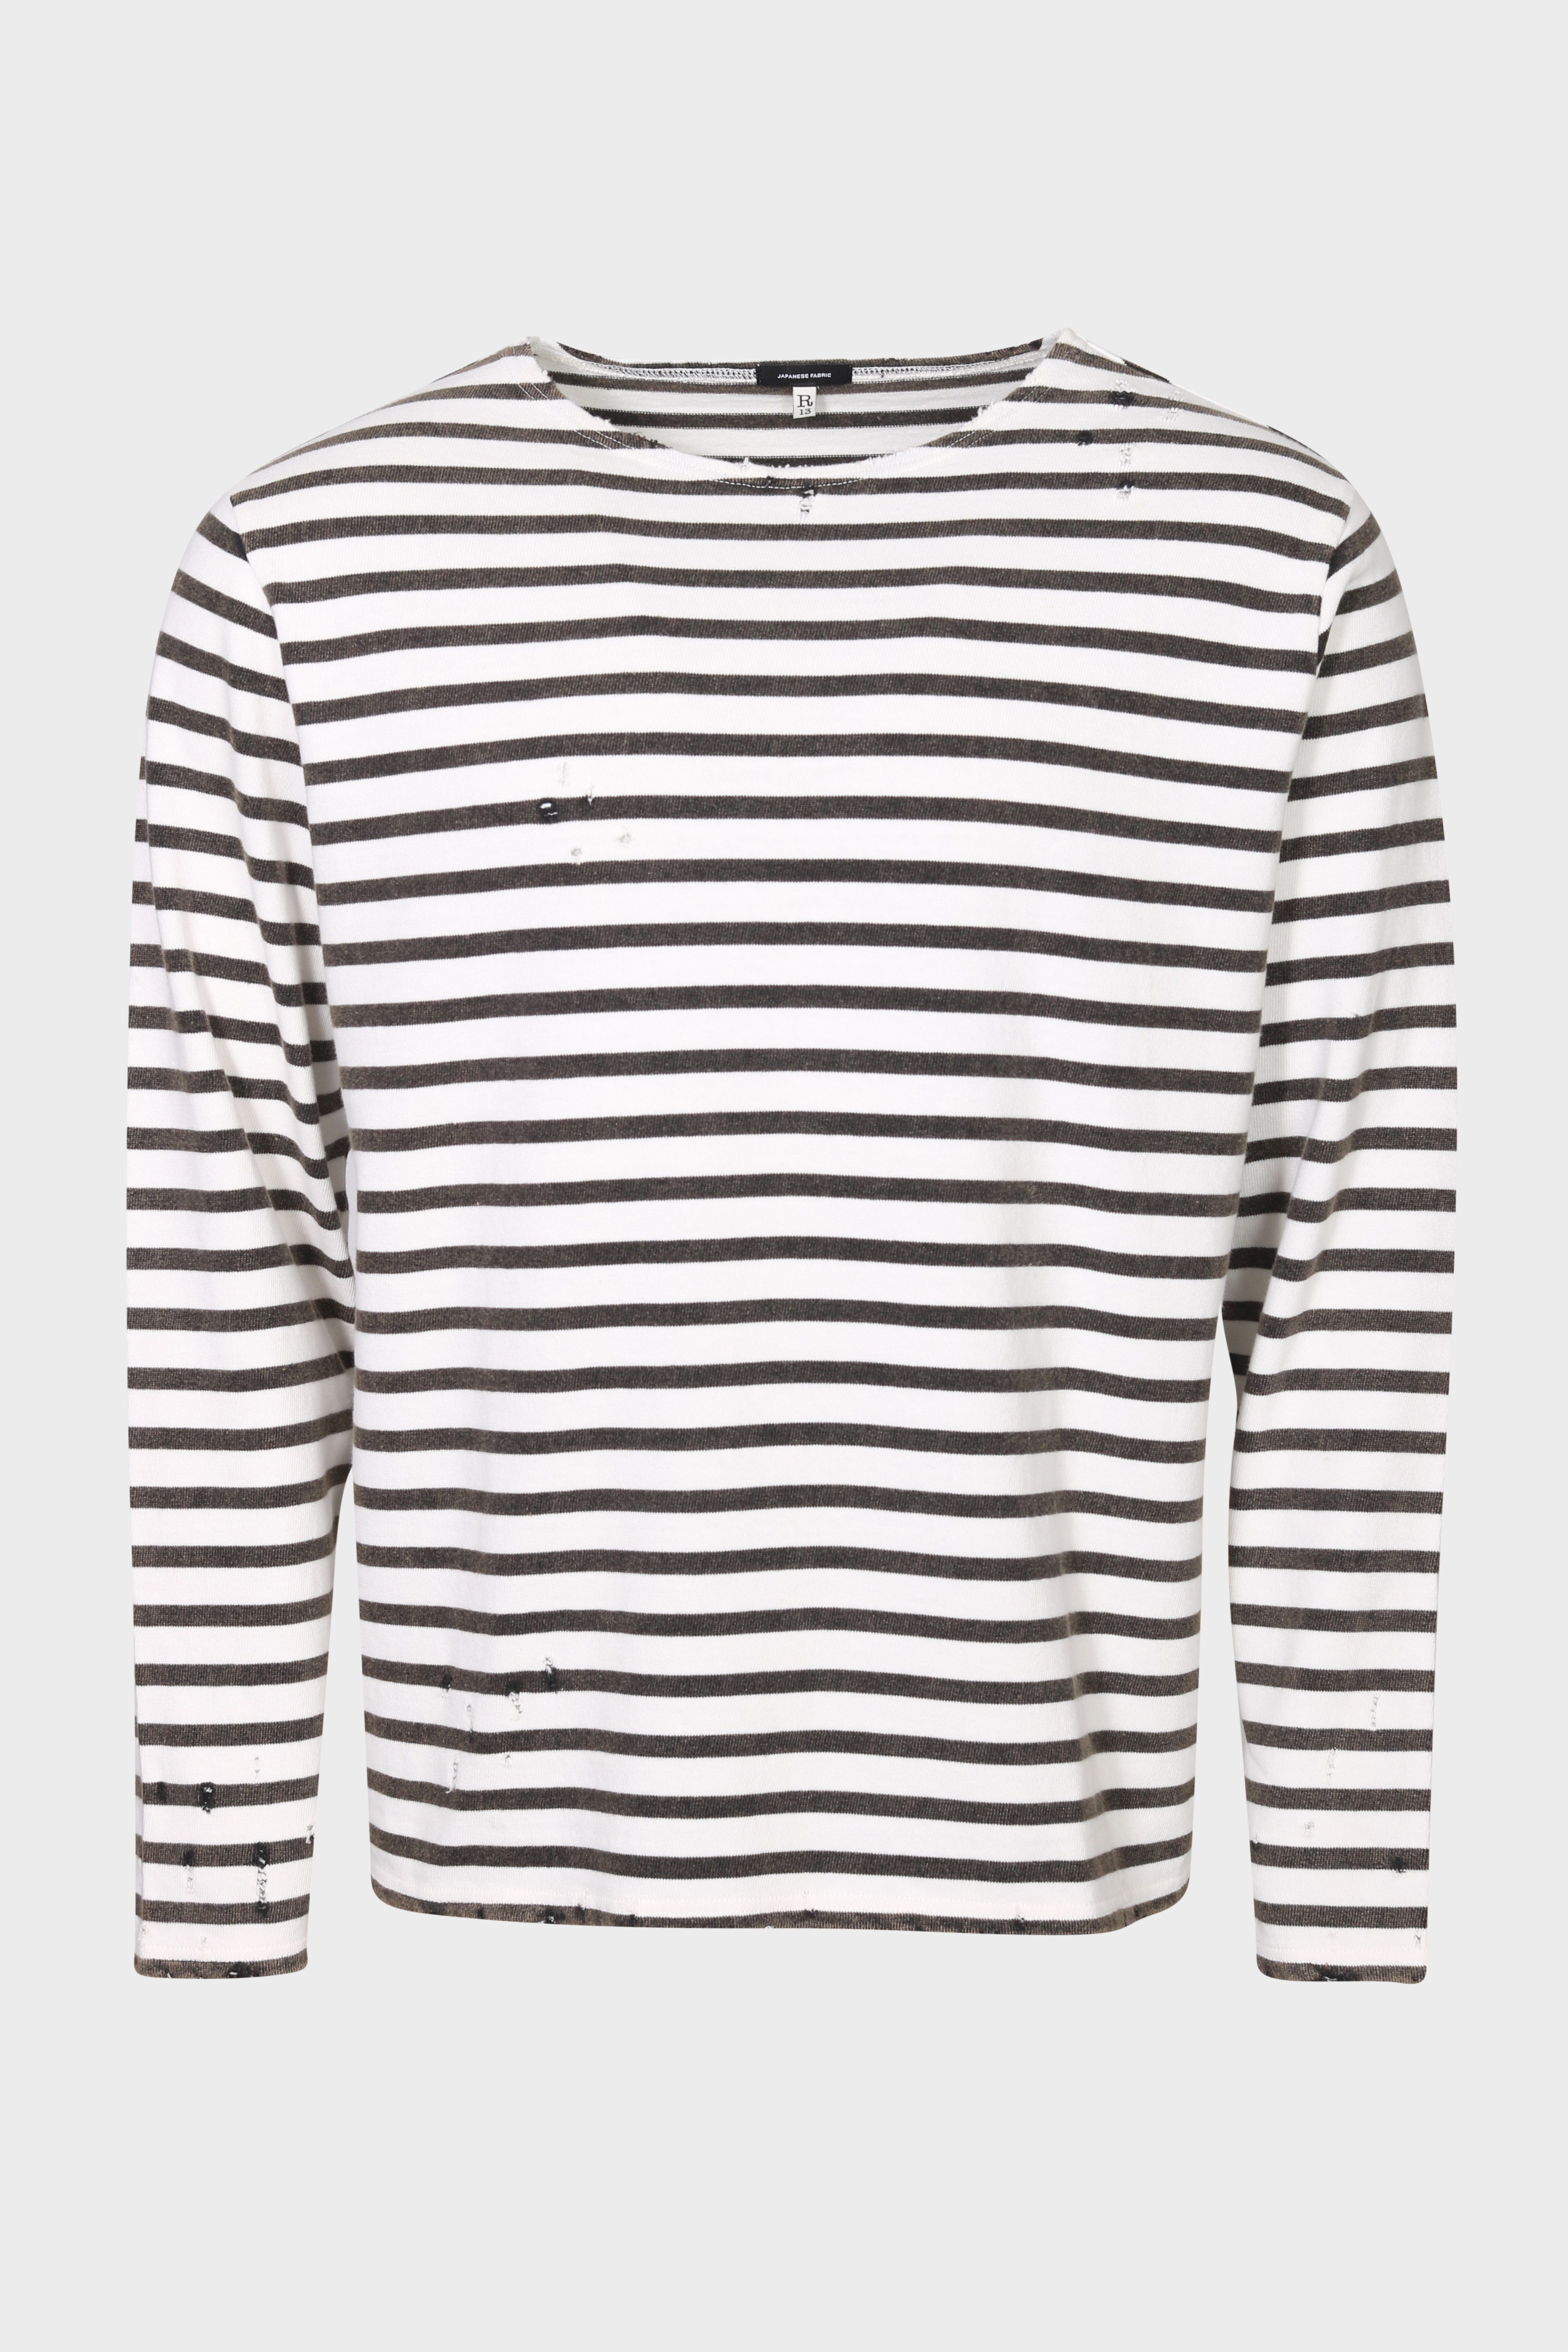 R13 Breton Sweater in Black/Ecru Stripe